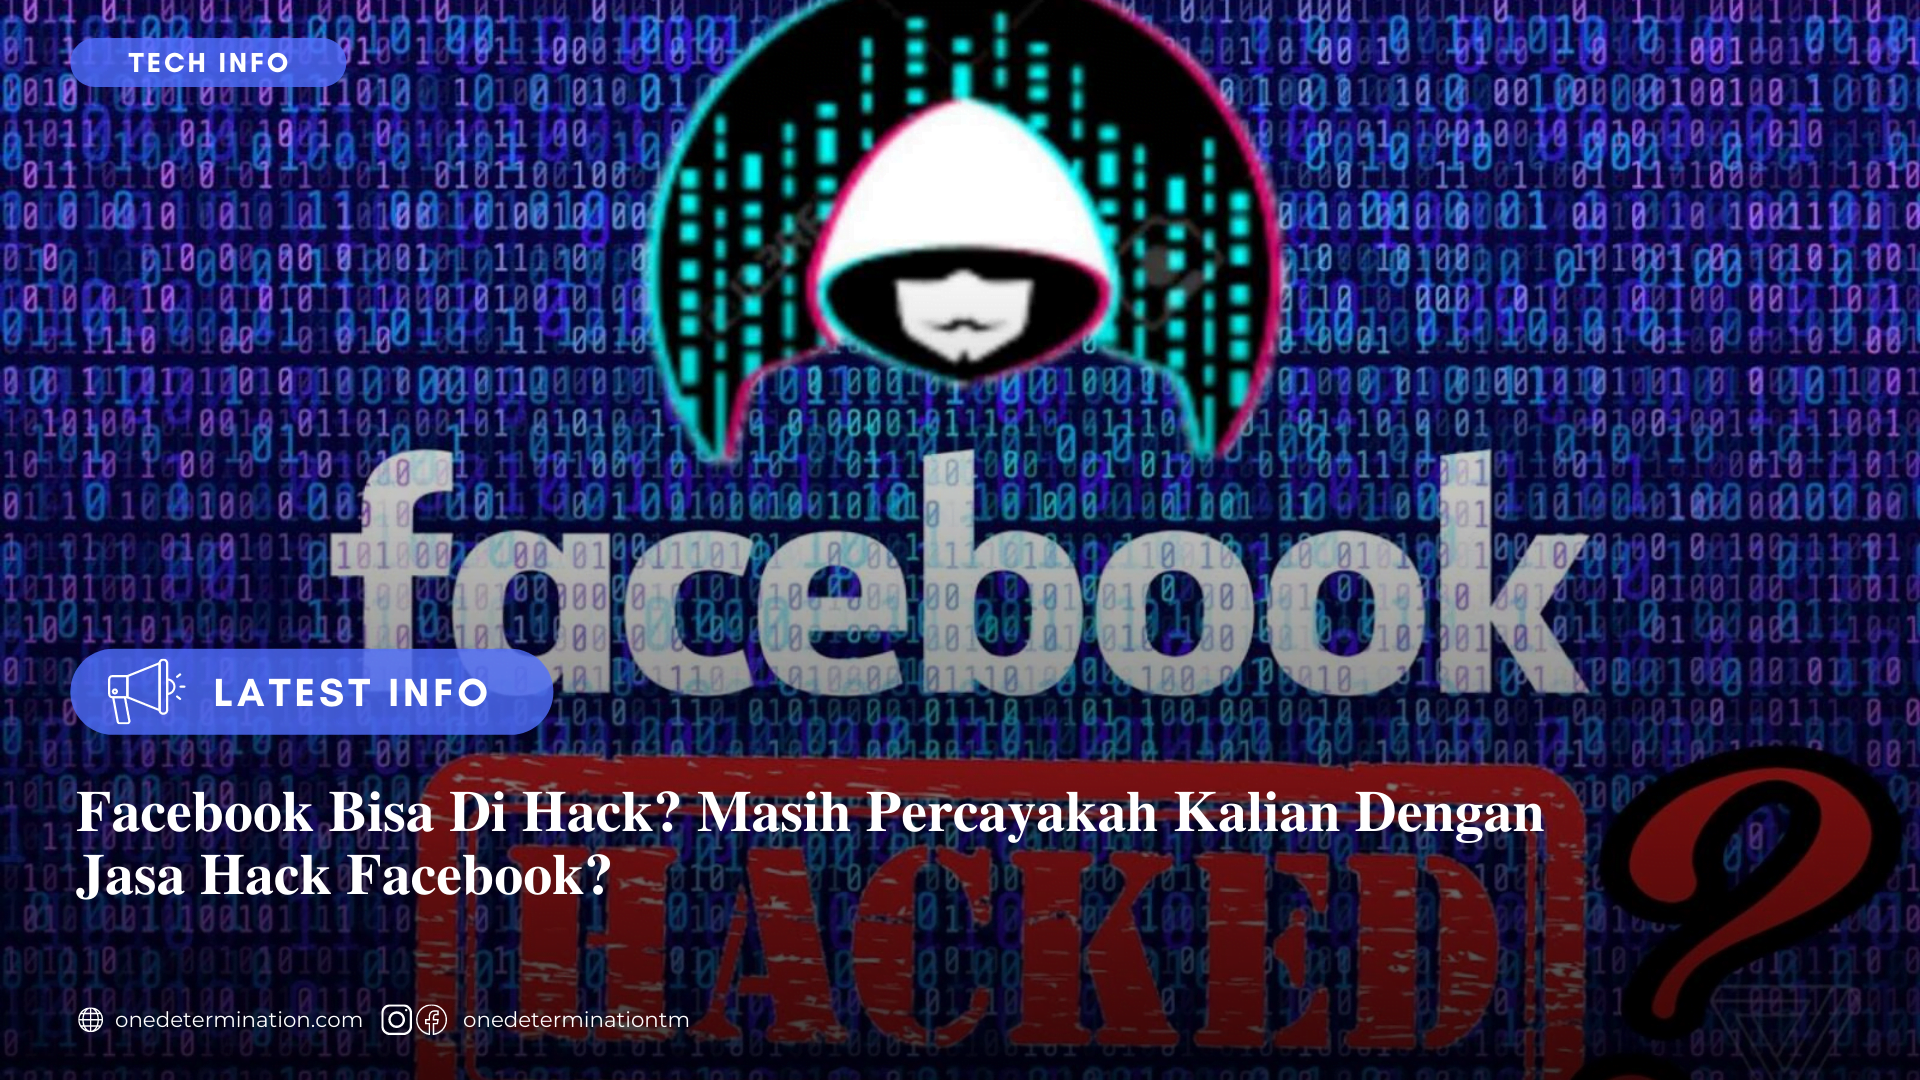 Jasa Hack Facebook